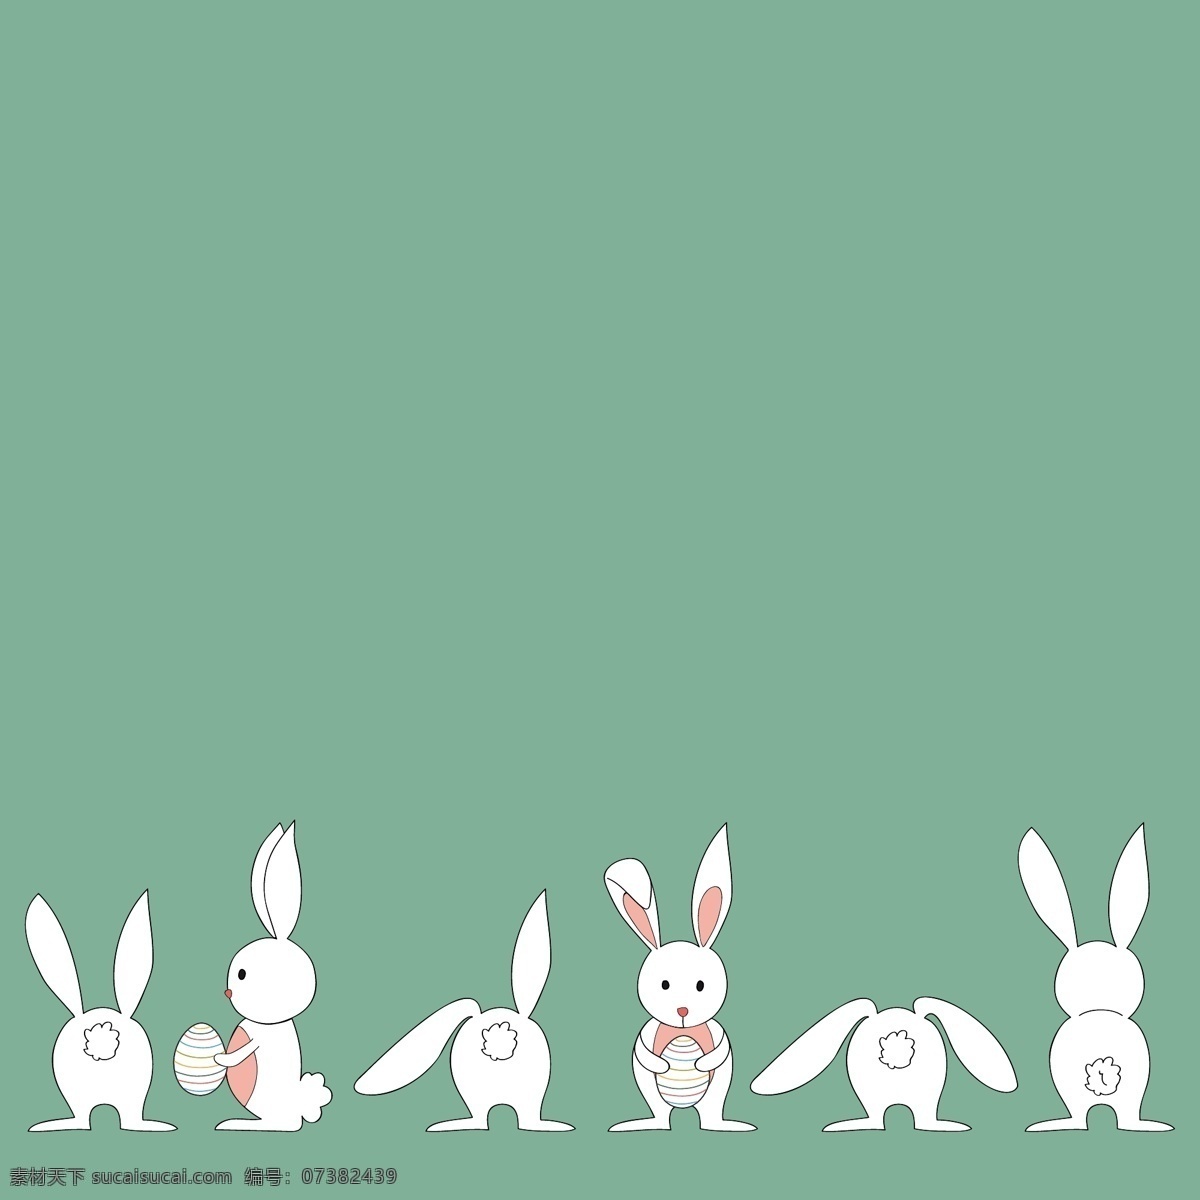 可爱 卡通 小 白兔 系列 小白兔 兔子 竖耳朵 小短尾 毛绒绒 白茫茫 粉红色 站立 蹲下 耷拉的耳朵 长耳兔 嫦娥 玉兔 中秋 吃小草的兔子 跳跃 矢量素材 卡通设计